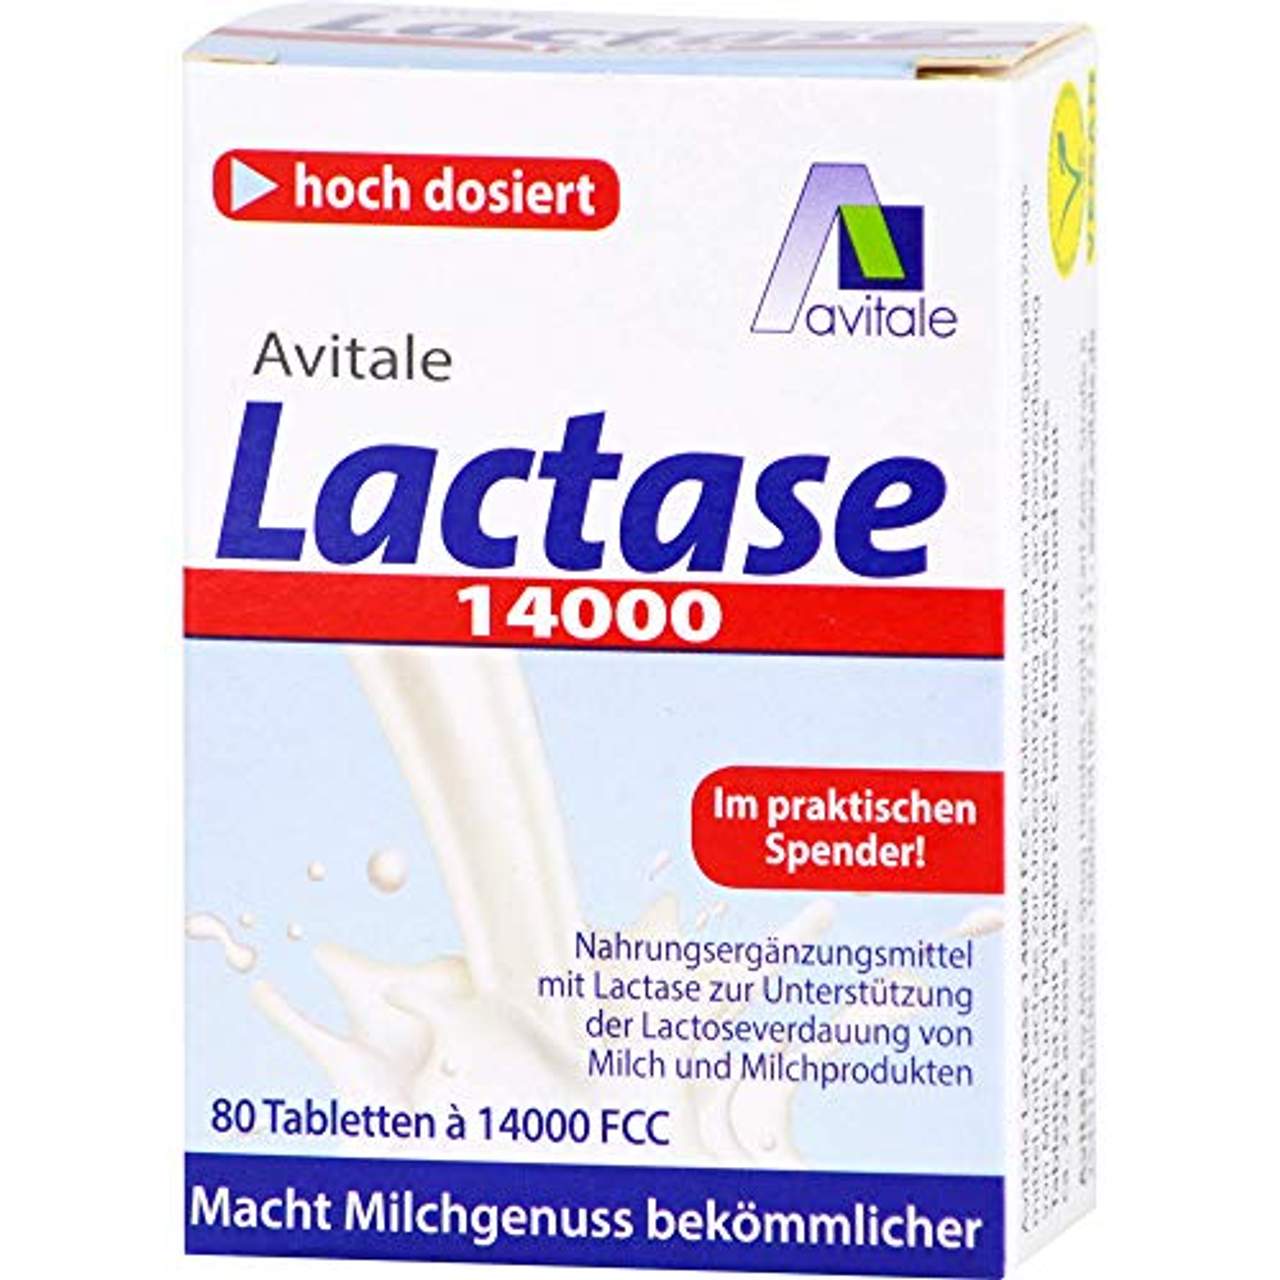 Avitale Lactase 14000 Tabletten